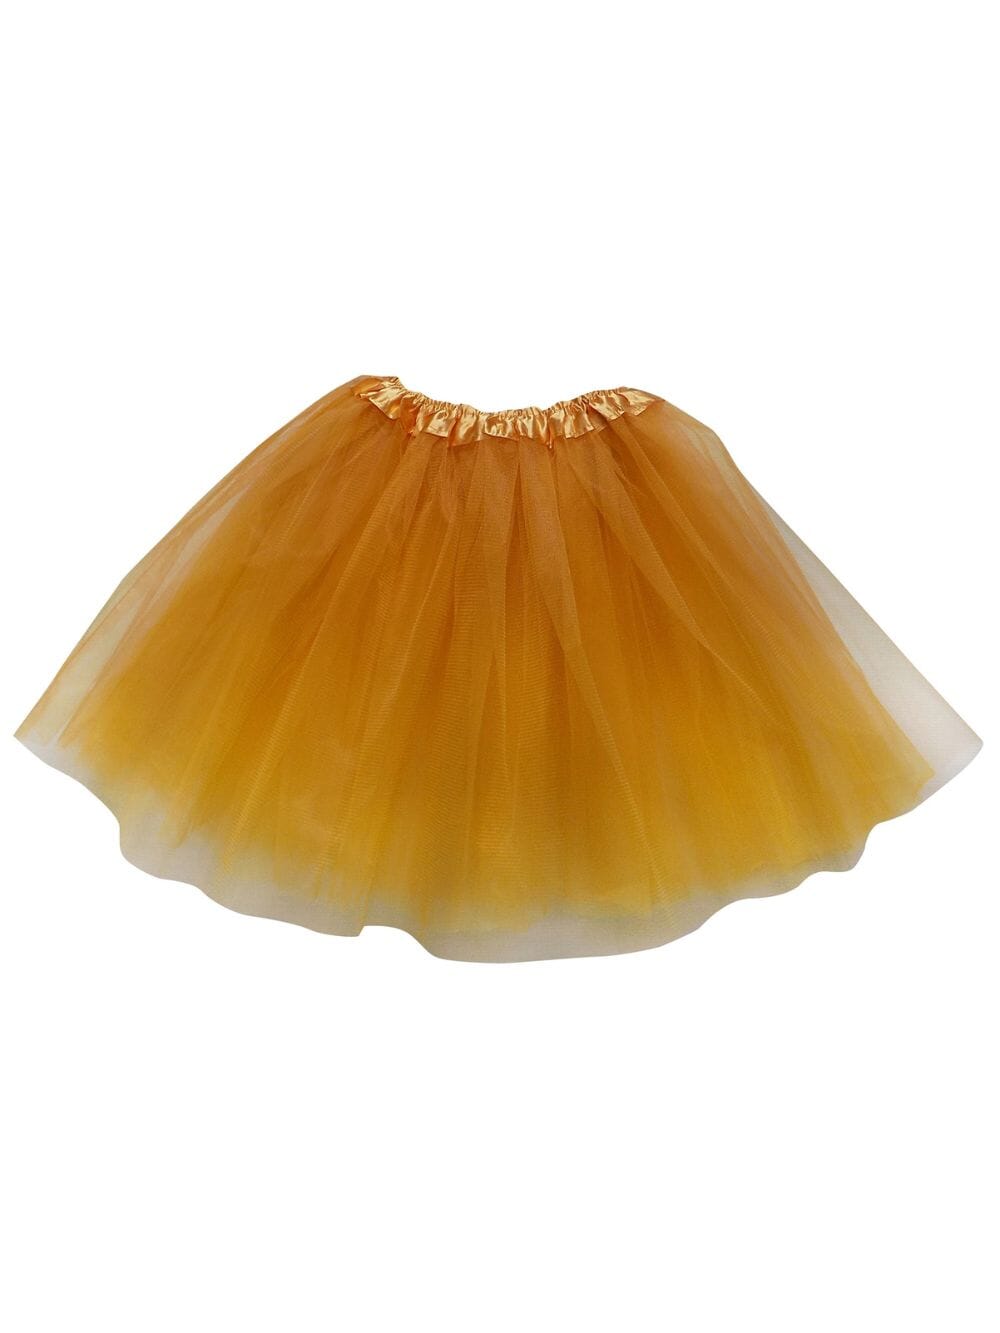 Goldenrod Tutu Skirt for Adult - Women's Size 3-Layer Tulle Skirt Ballet Costume Dance Tutus - Sydney So Sweet